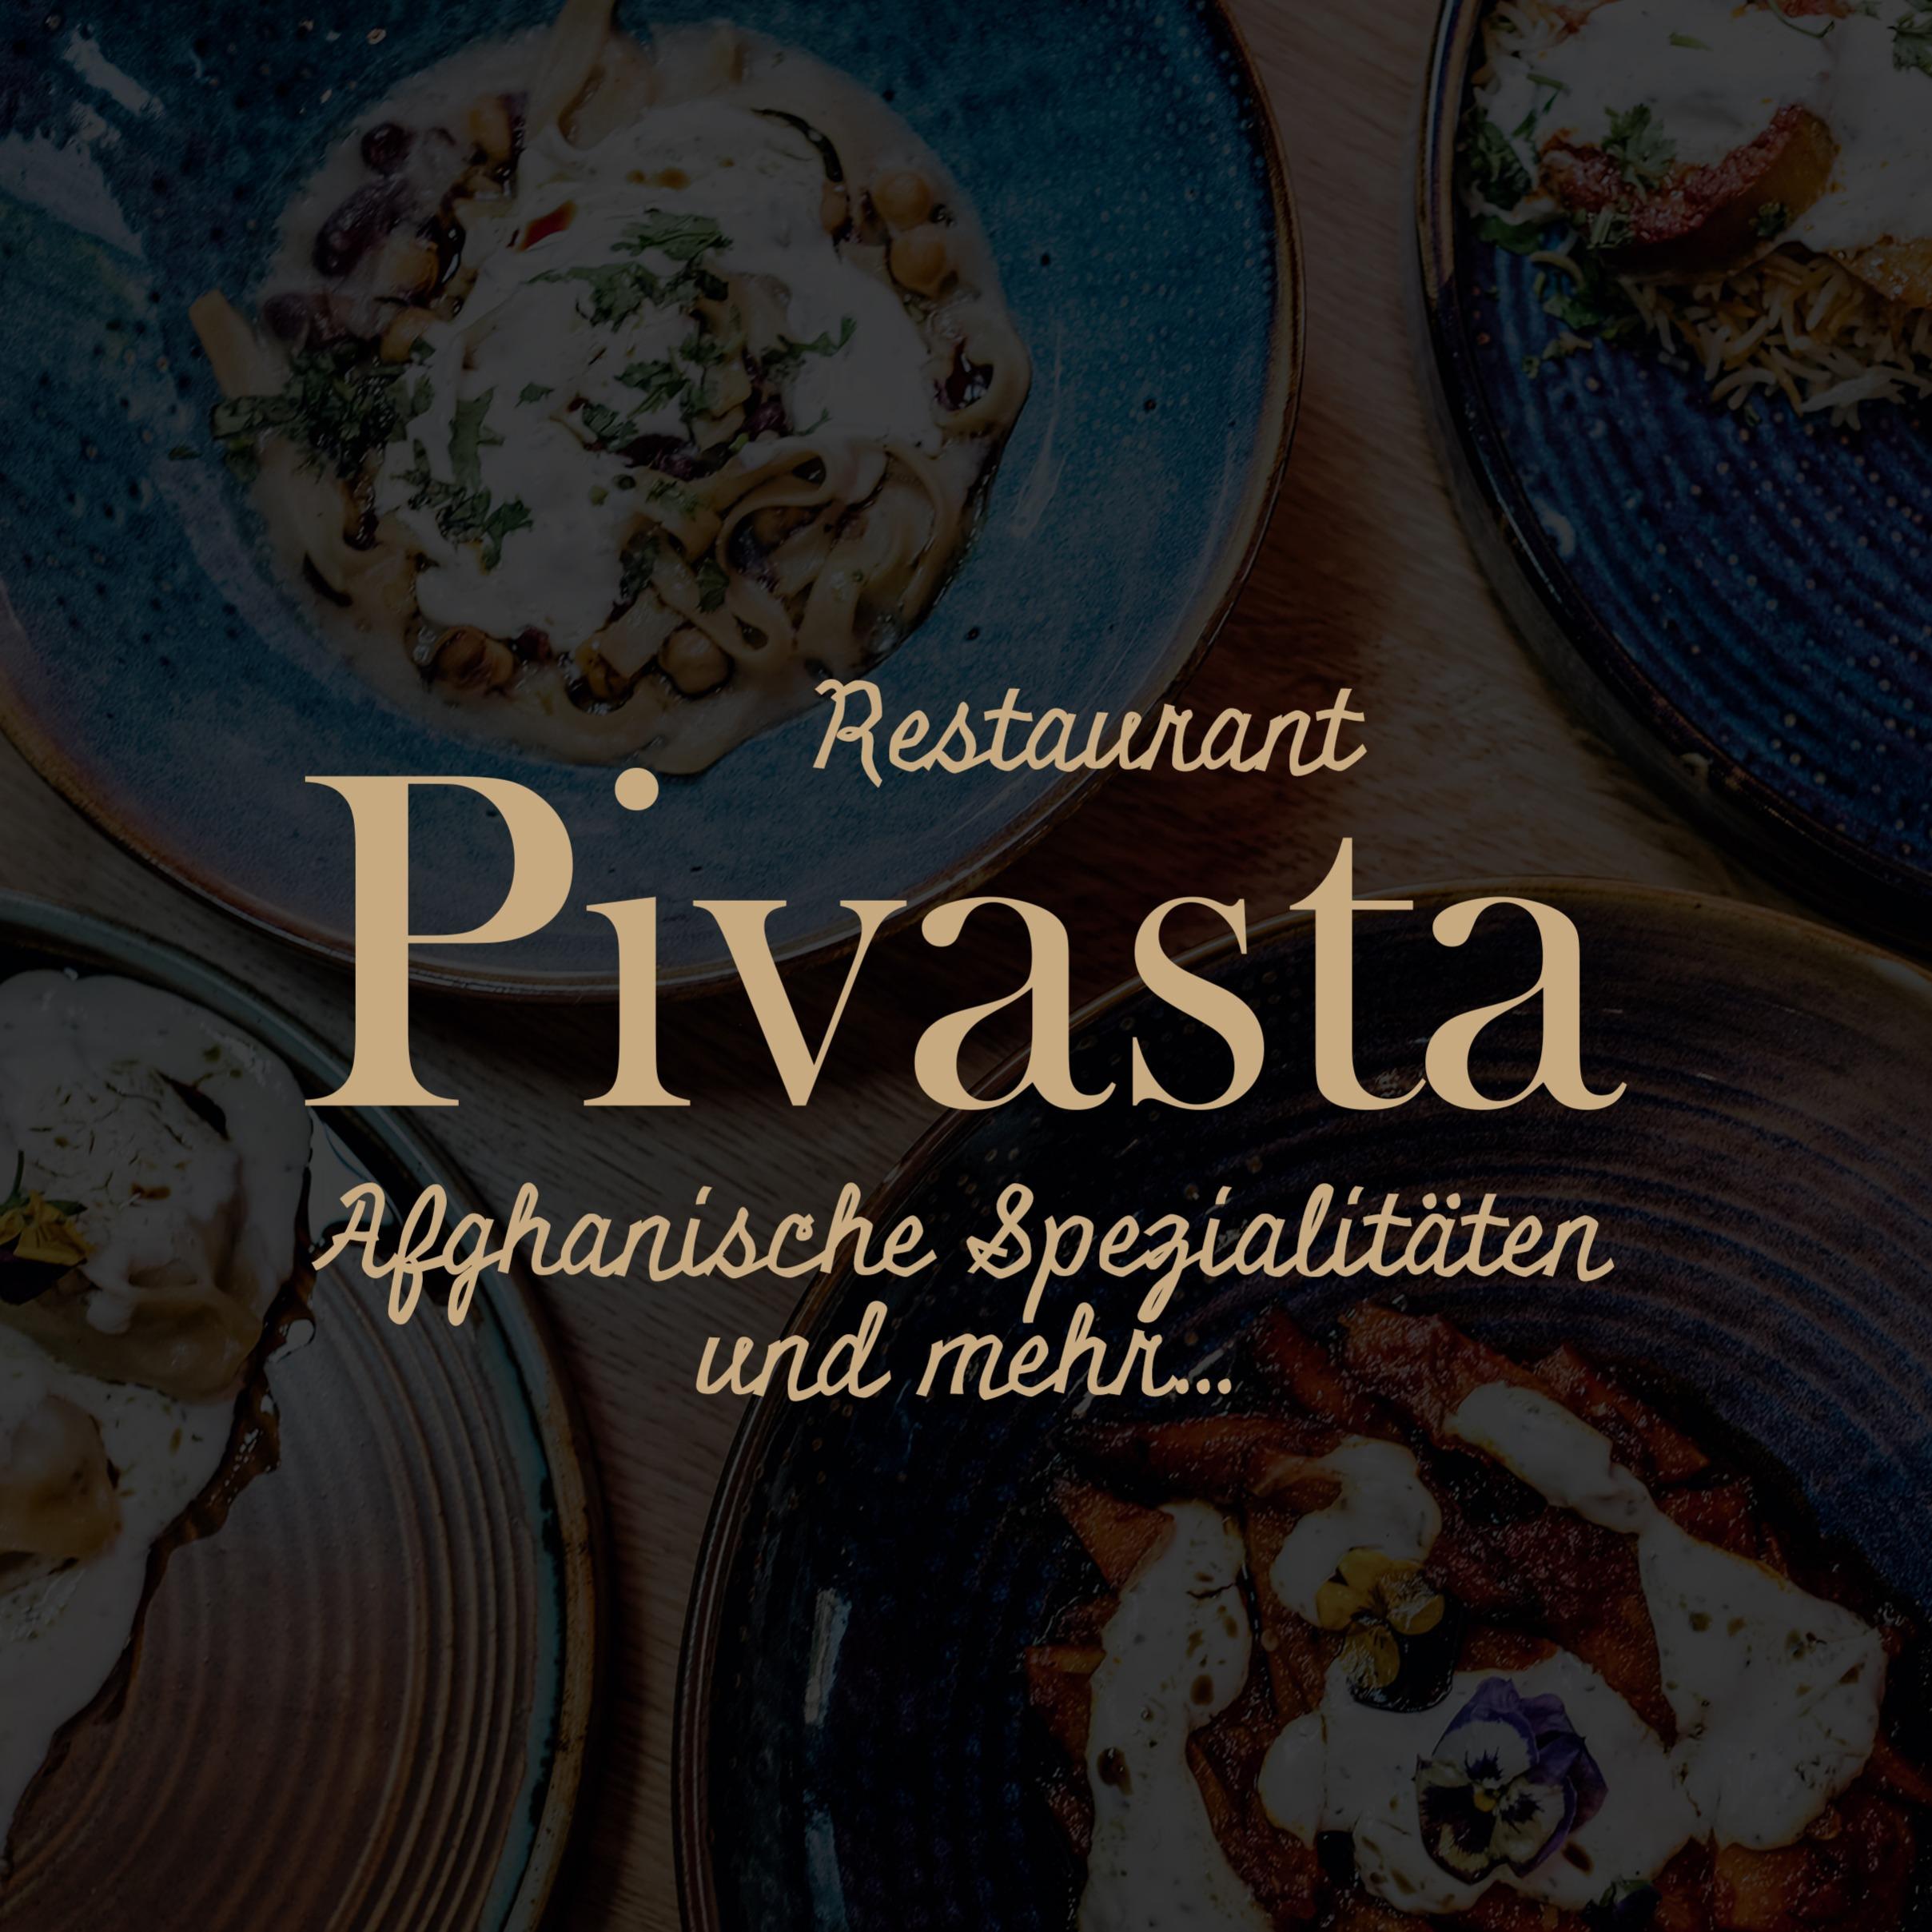 Afghanisches Restaurant Pivasta München in München - Logo